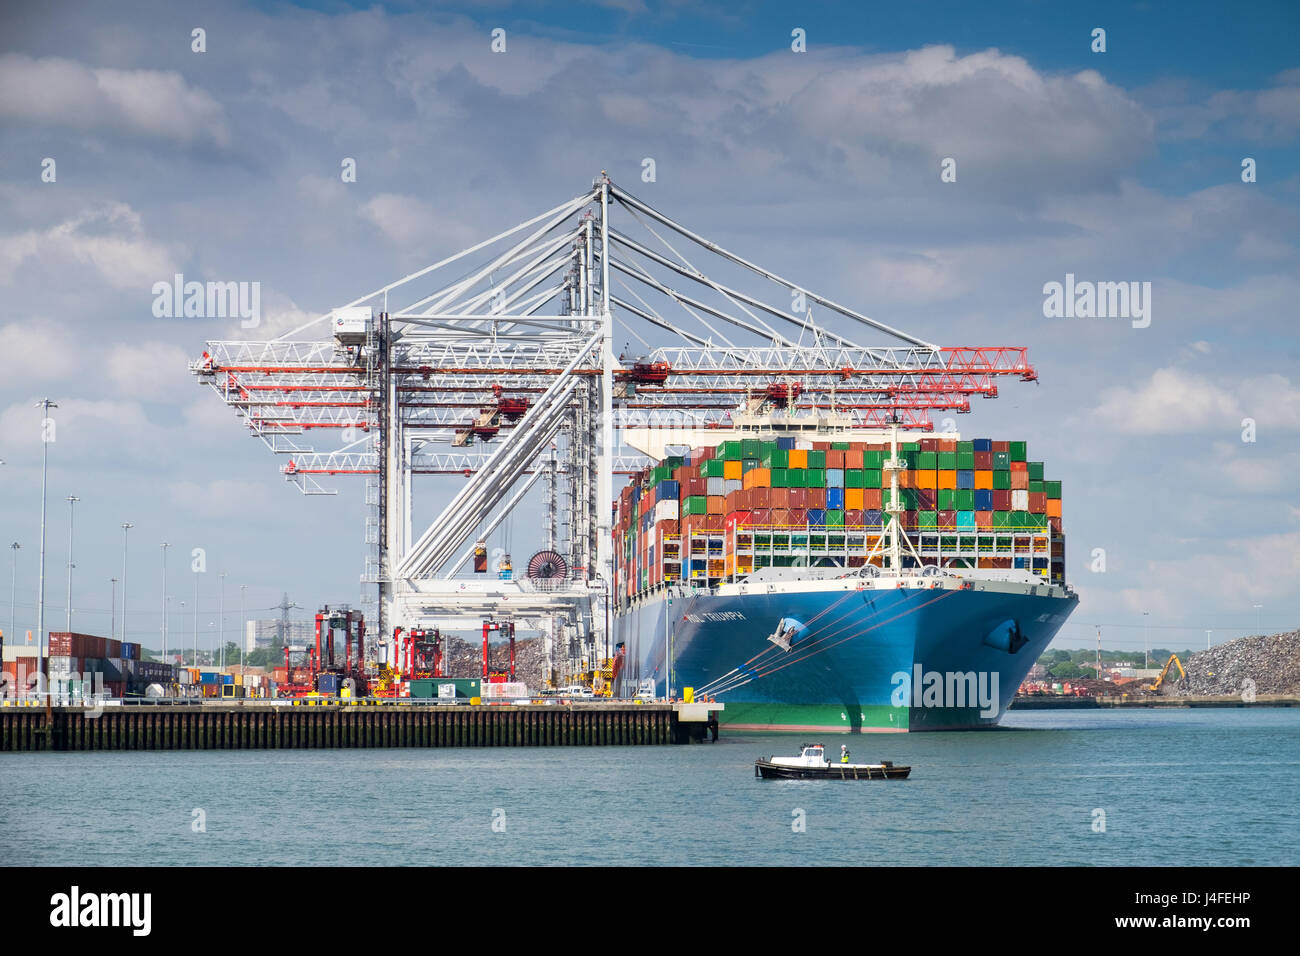 Containerschiff MOL Triumph bei DP World Container-Hafen Southampton Docks. MOL-Triumph ist eines der größten Containerschiffe der Welt Stockfoto